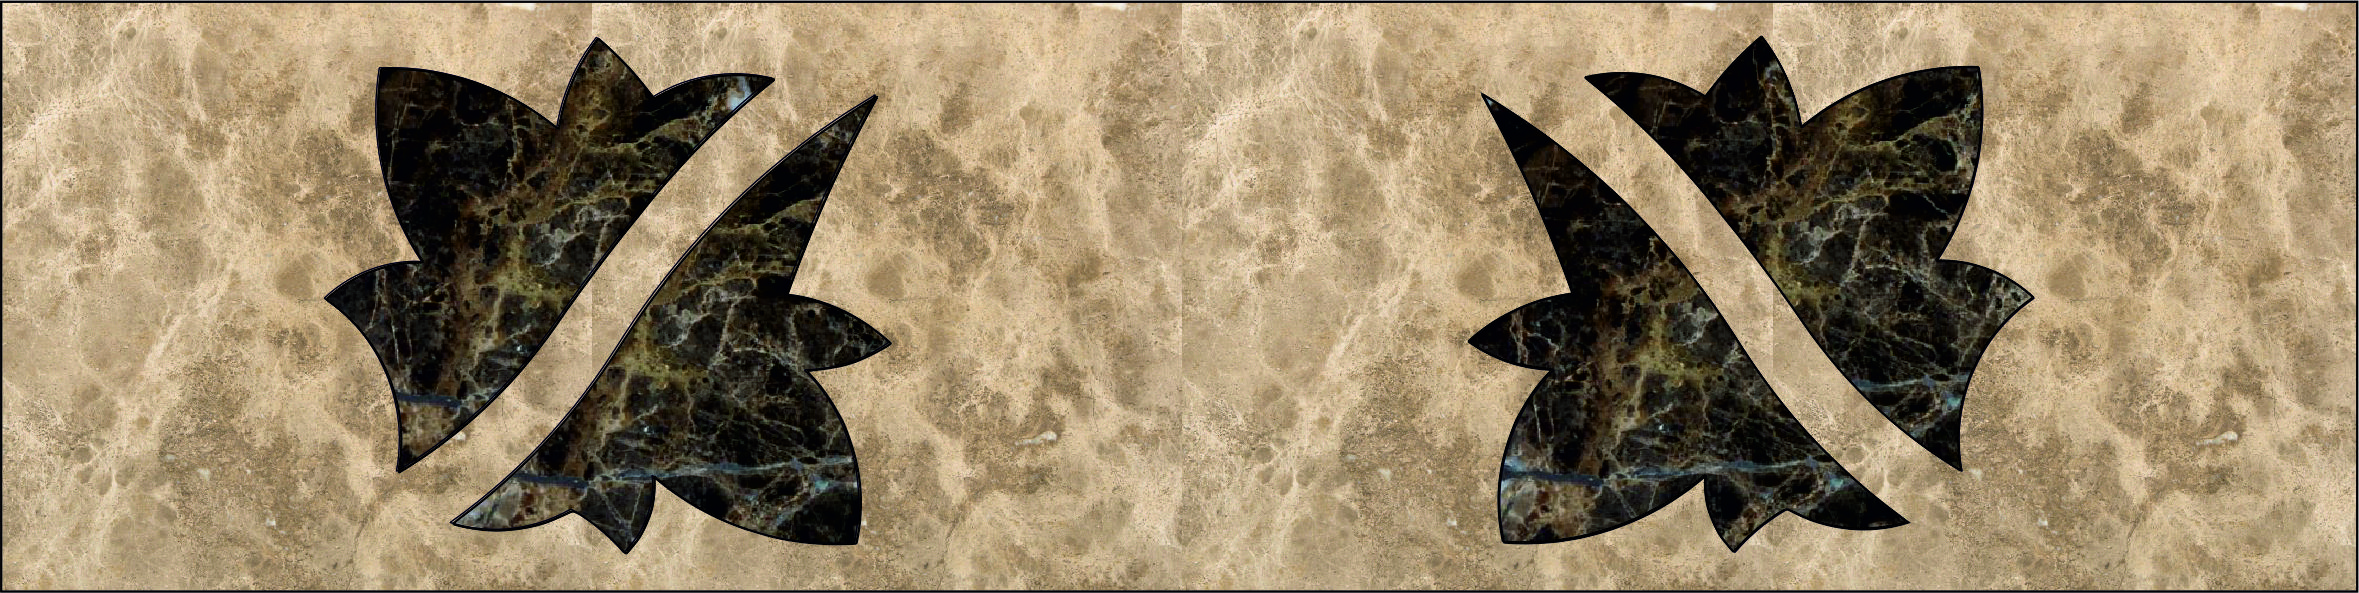 Каменный бордюр панно, арт. Б 8-2, размер, мм: 600х150х20.